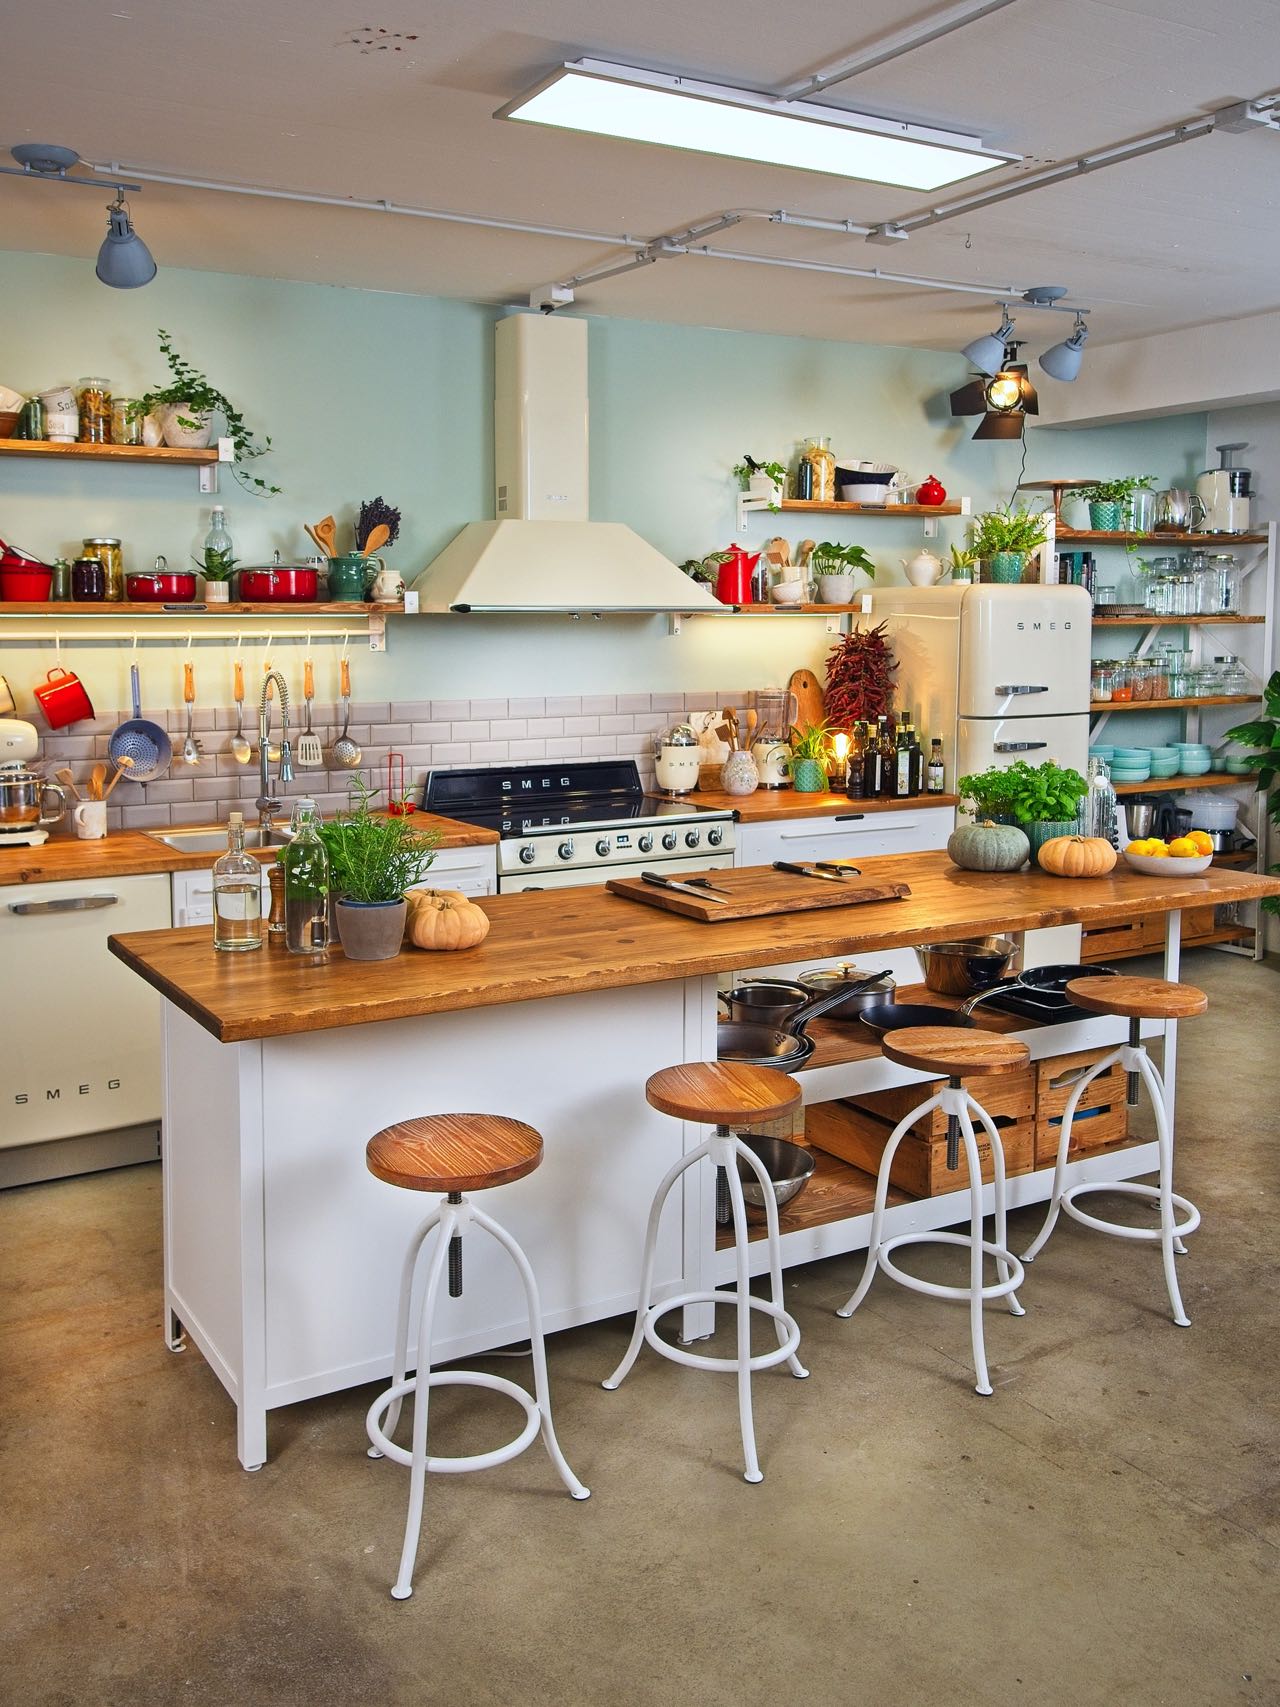 Viel Platz zum gemeinsamen Schnibbeln, Reiben und Abschmecken: die Authenic Kitchen Kücheninsel in der Kochschule Veecoco. Foto: Smeg